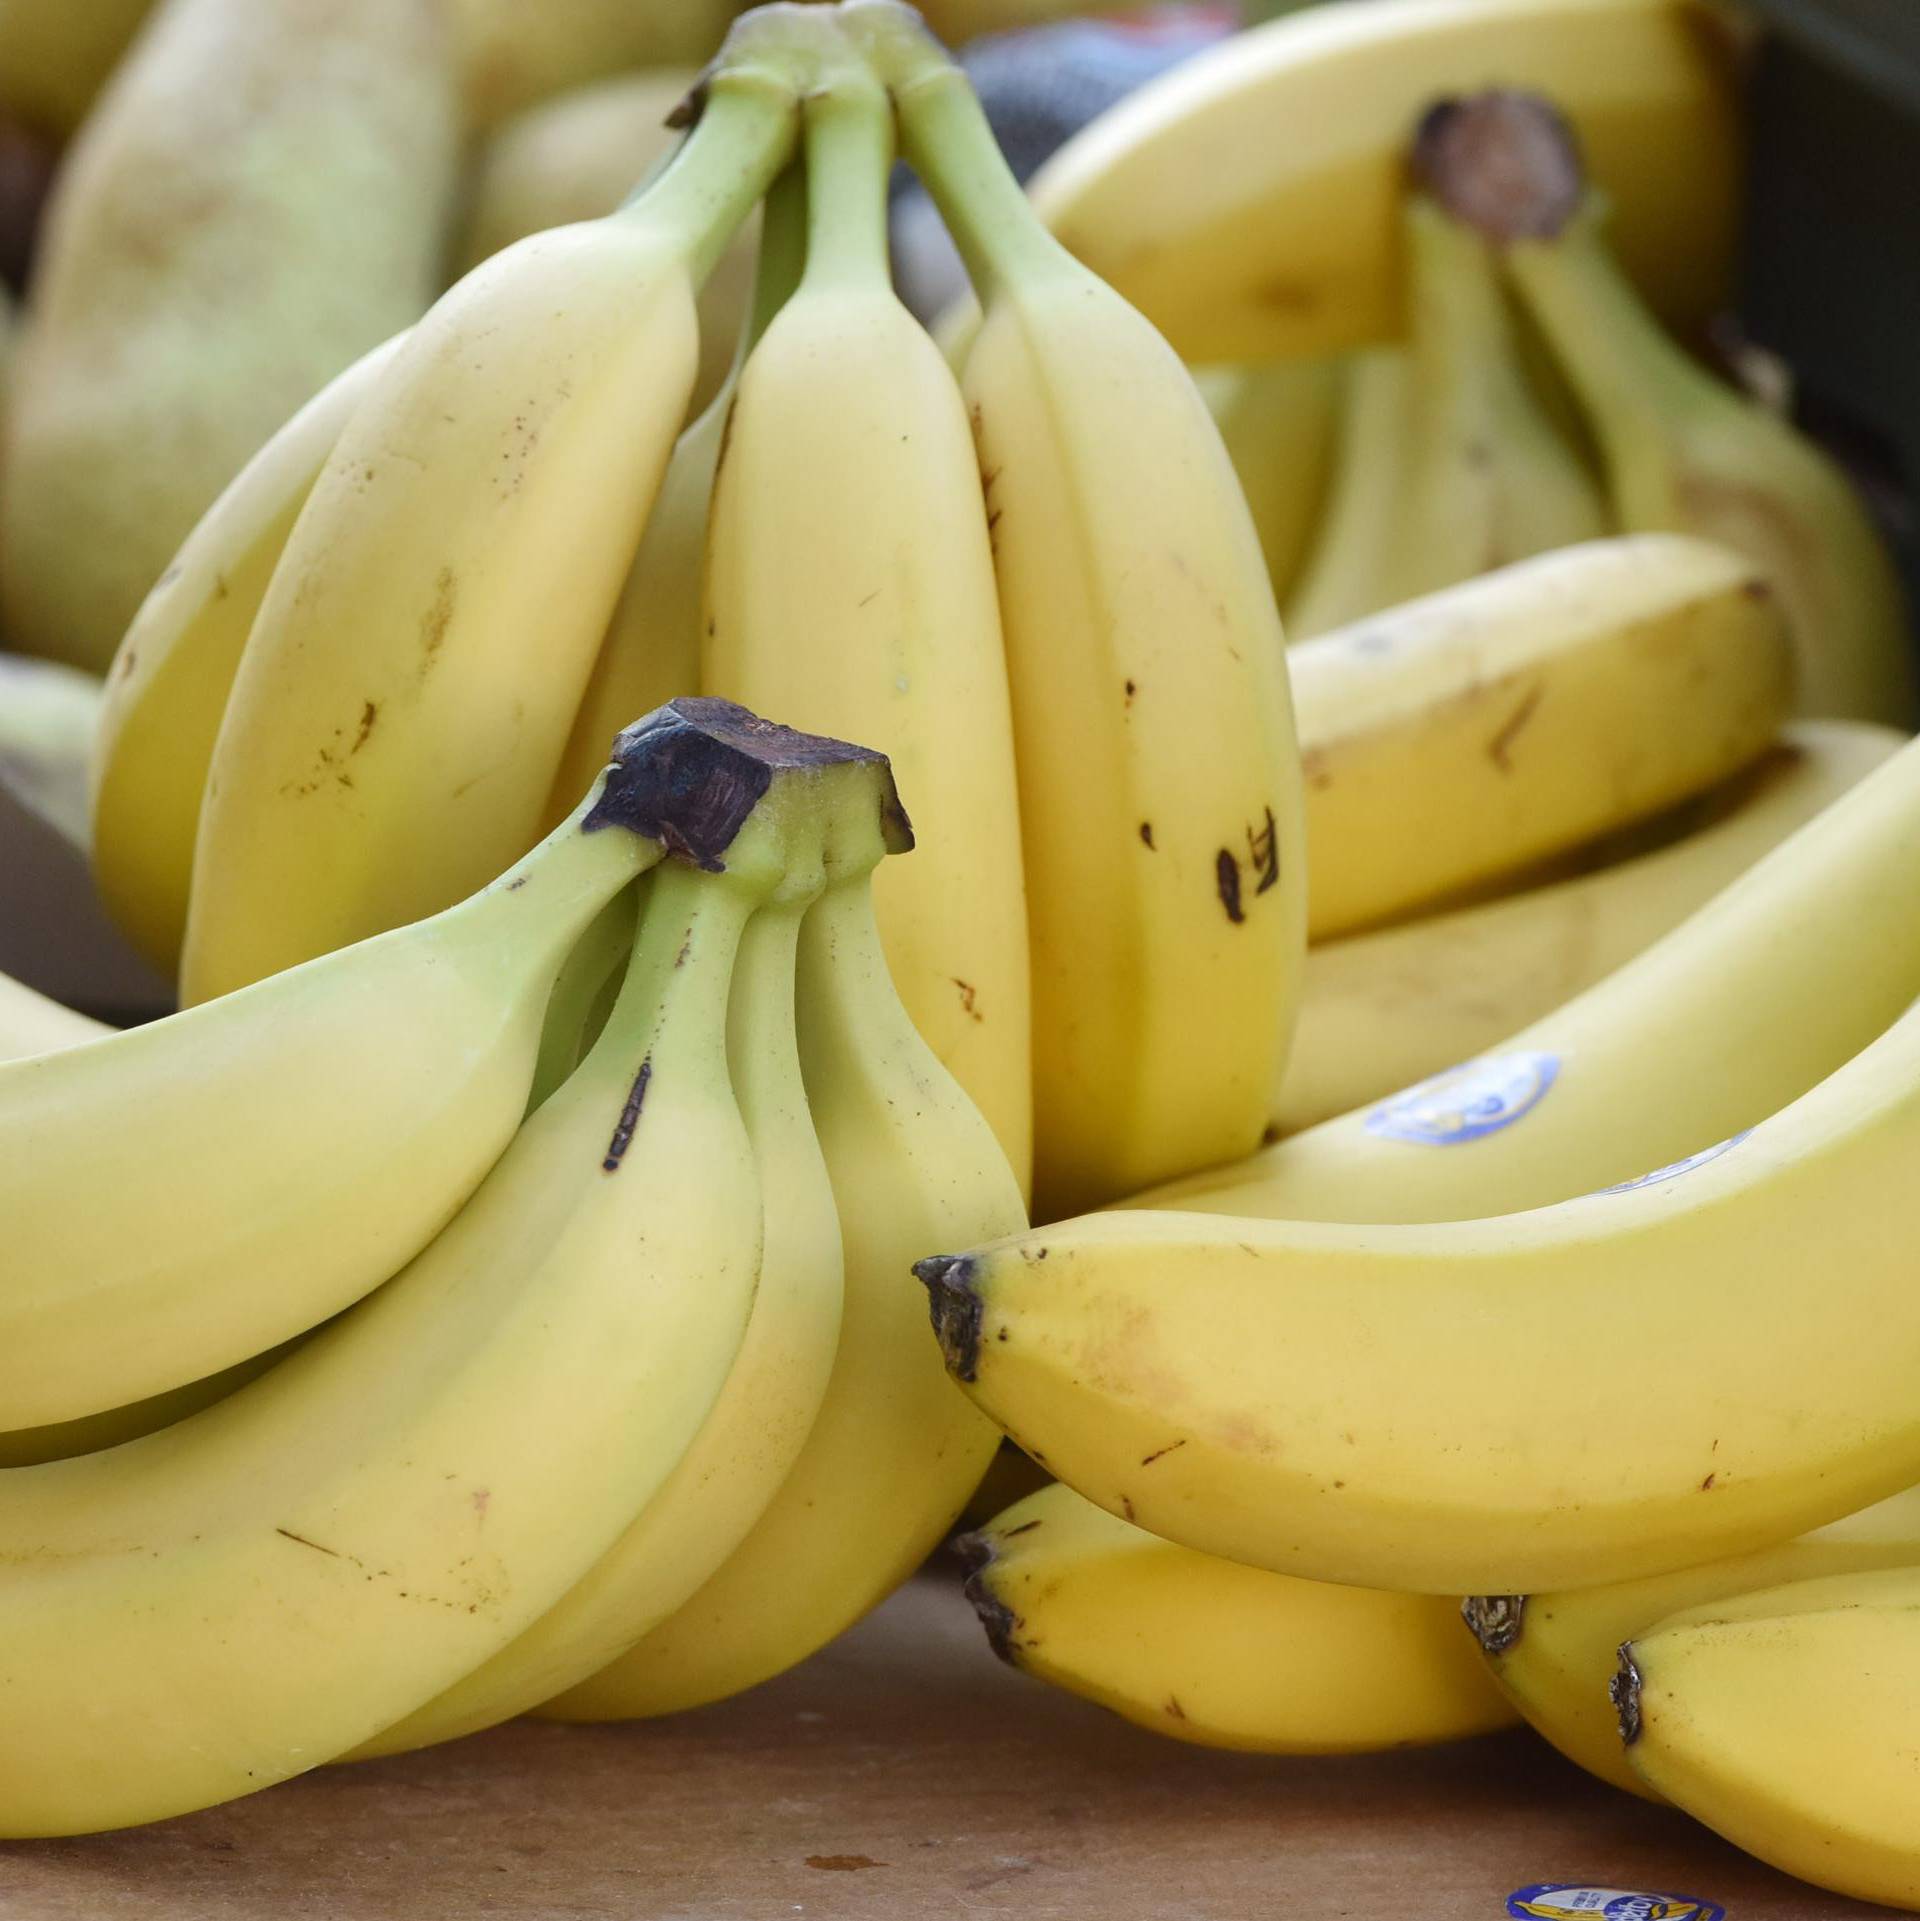 Potrošnja 2018.: Prošle godine pojeli smo 383 milijuna banana